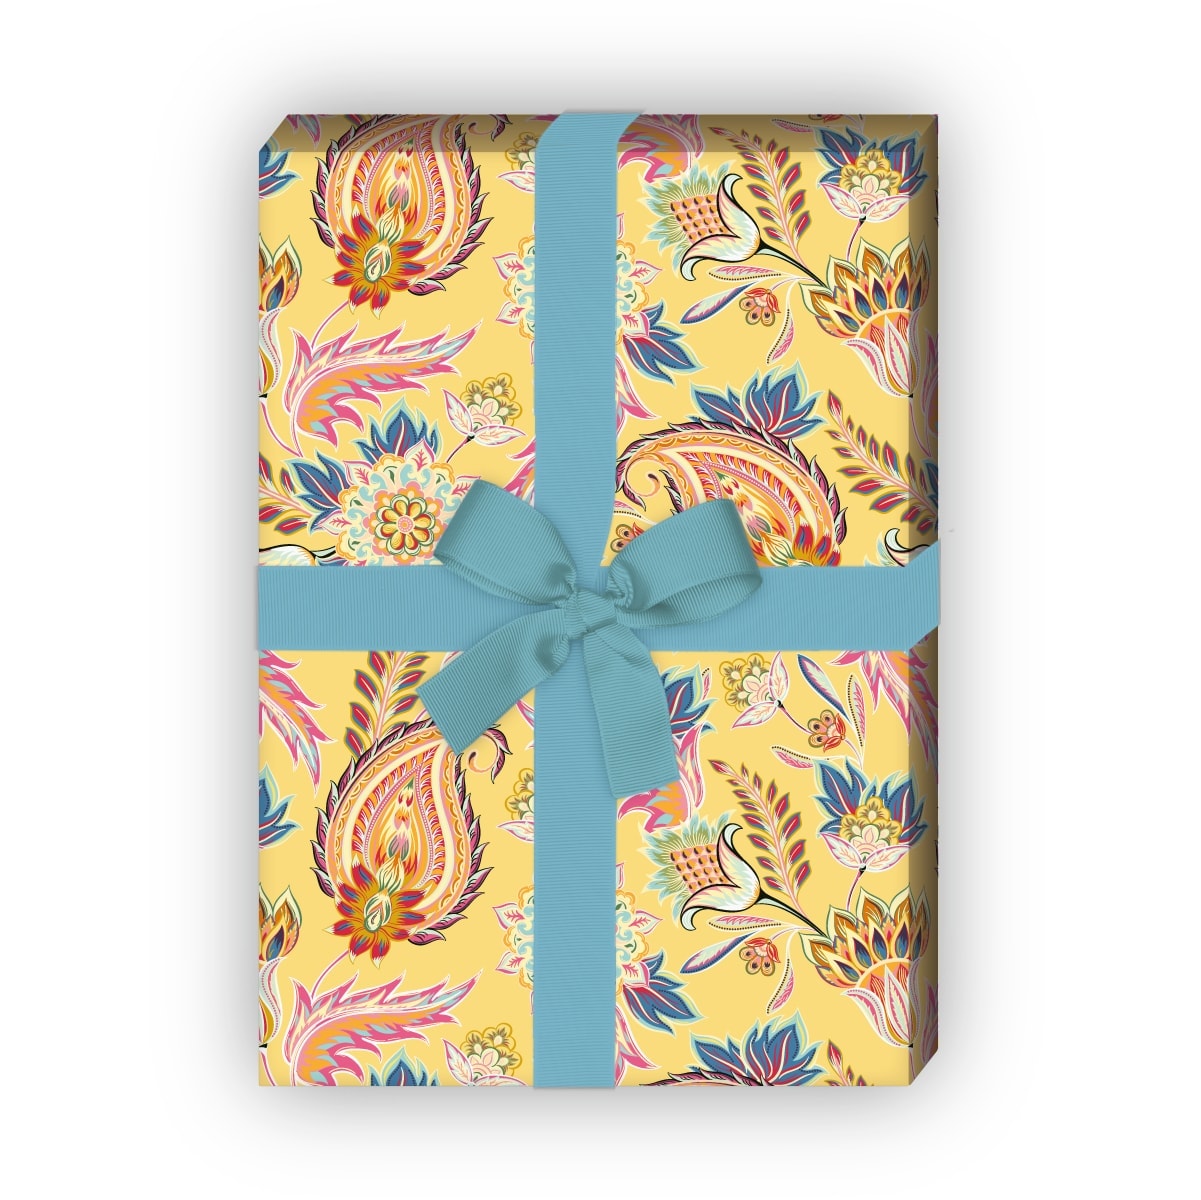 Kartenkaufrausch: Edles Geschenkpapier mit üppigem aus unserer florale Papeterie in gelb